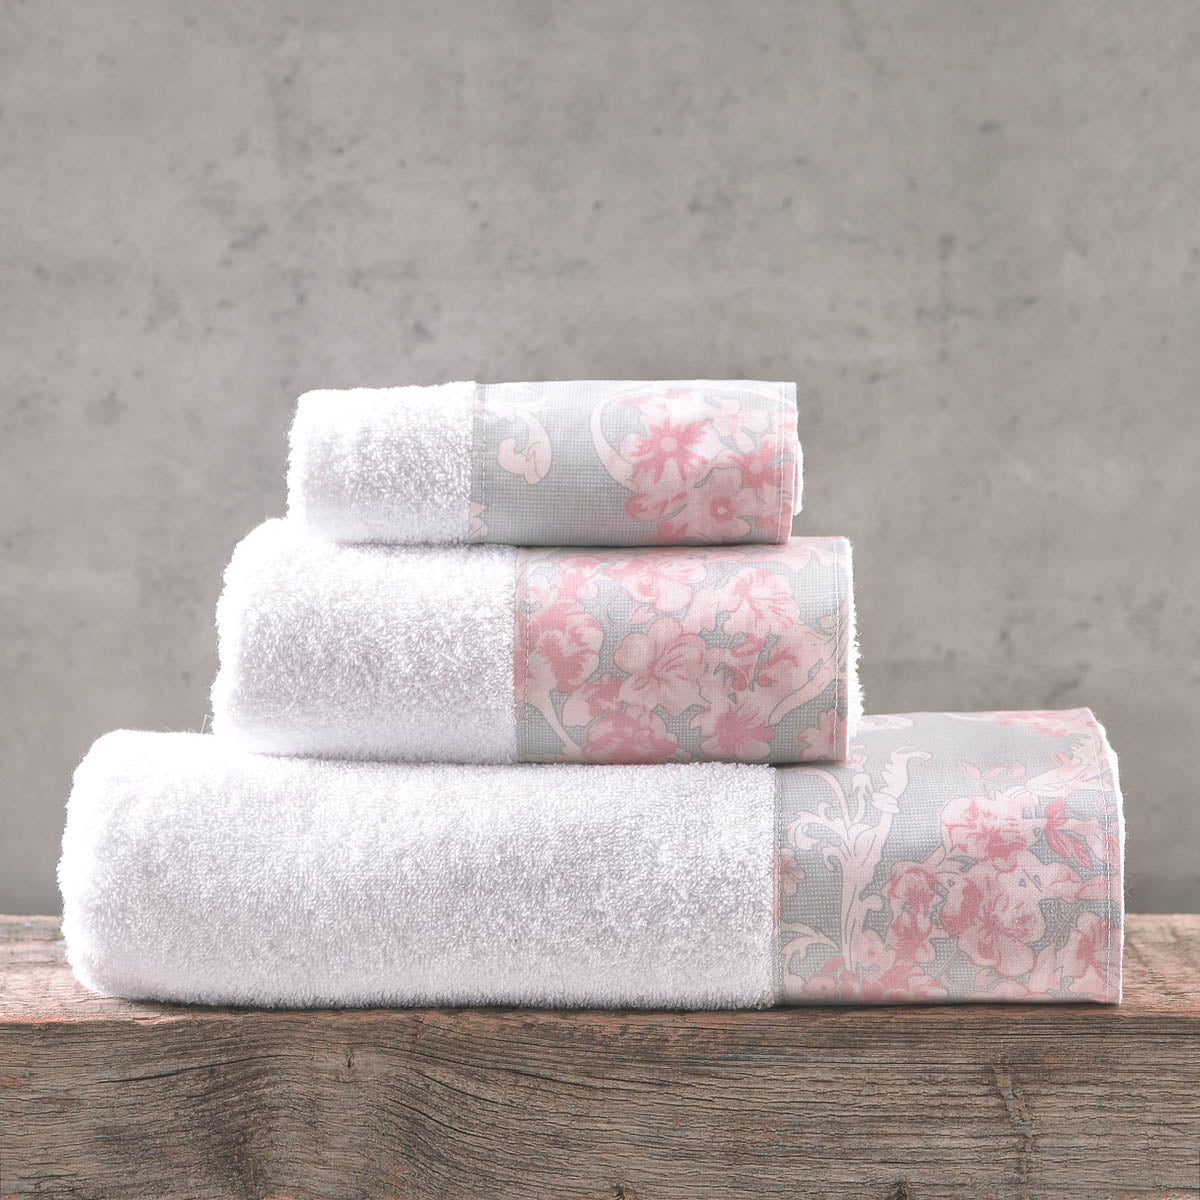 QUIN Γκρι - Σετ πετσέτες 3 τεμ. Γκρι 30 x 50, 50 x 90, 80 x 150 από την εταιρεία Rythmos Home